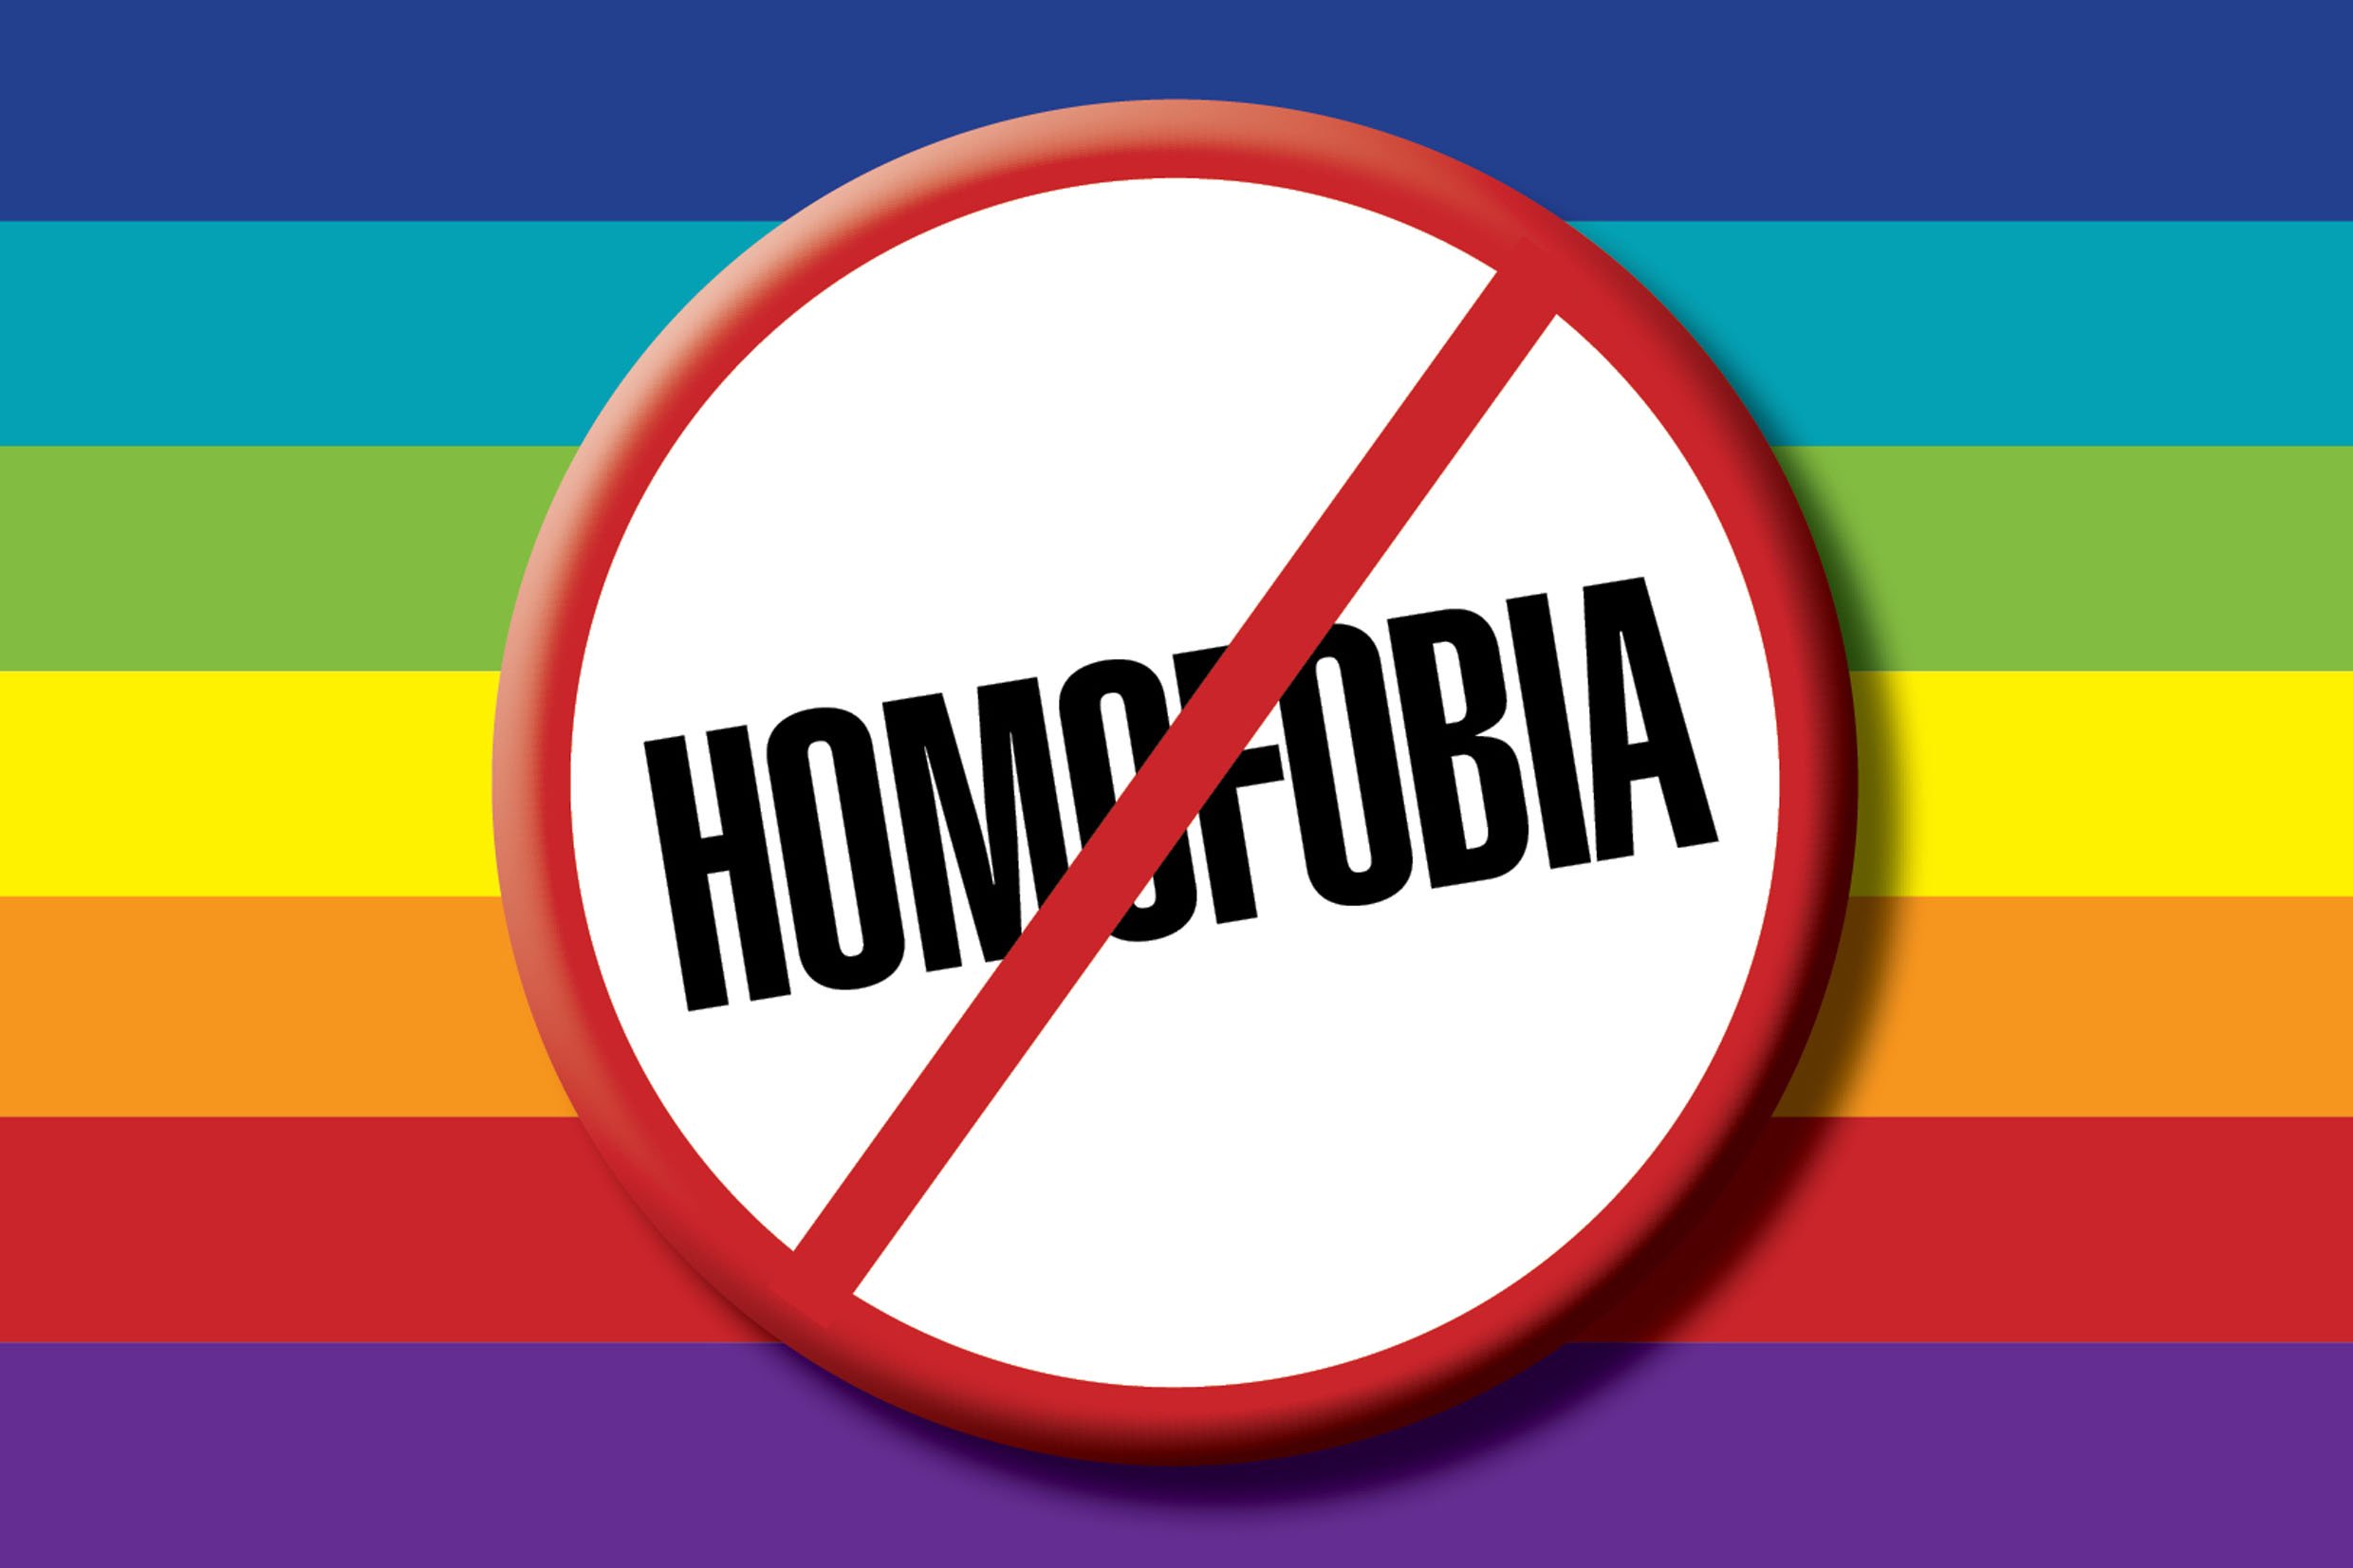 Mensagens de combate  homofobia o preconceito contra LGBTs